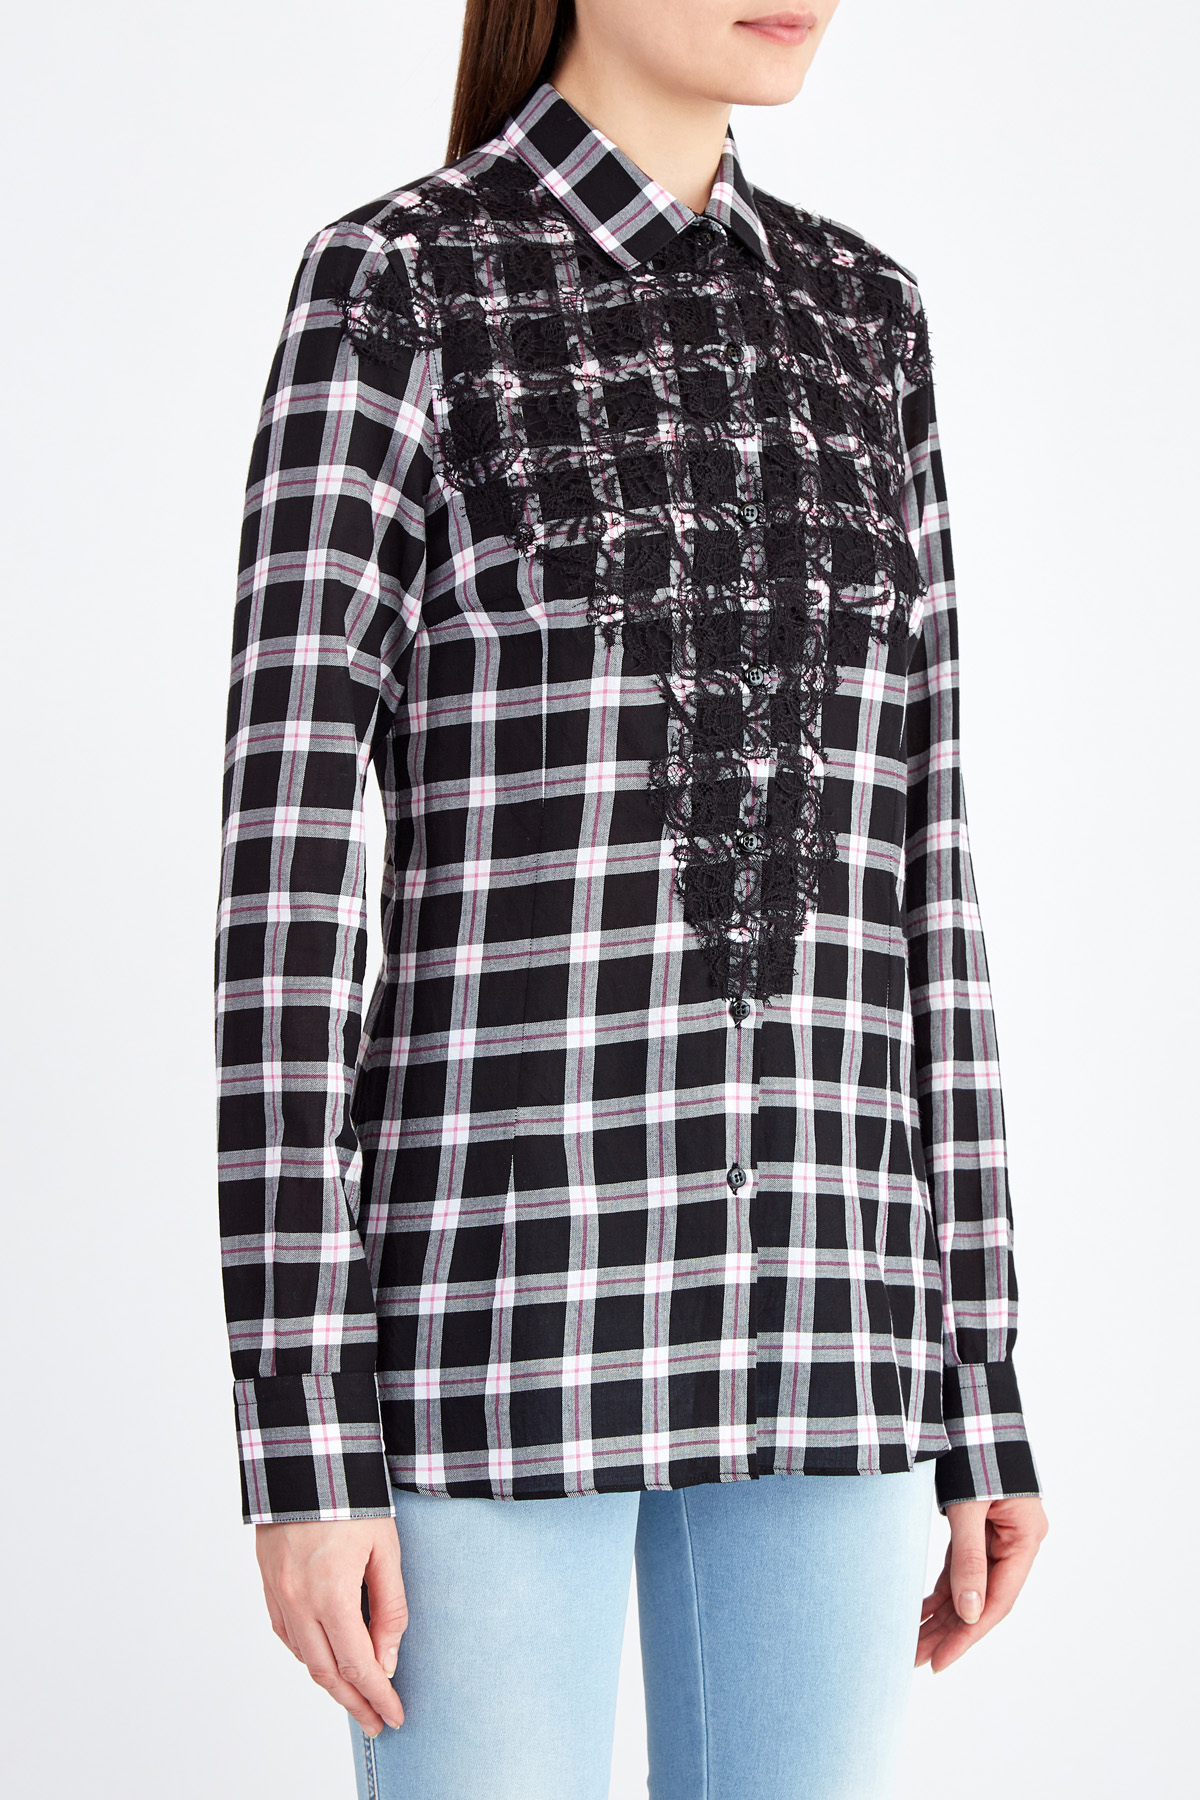 Приталенная рубашка из хлопка с отделкой кружевом ручной работы ERMANNO SCERVINO, цвет черно-белый, размер 40;44 - фото 3